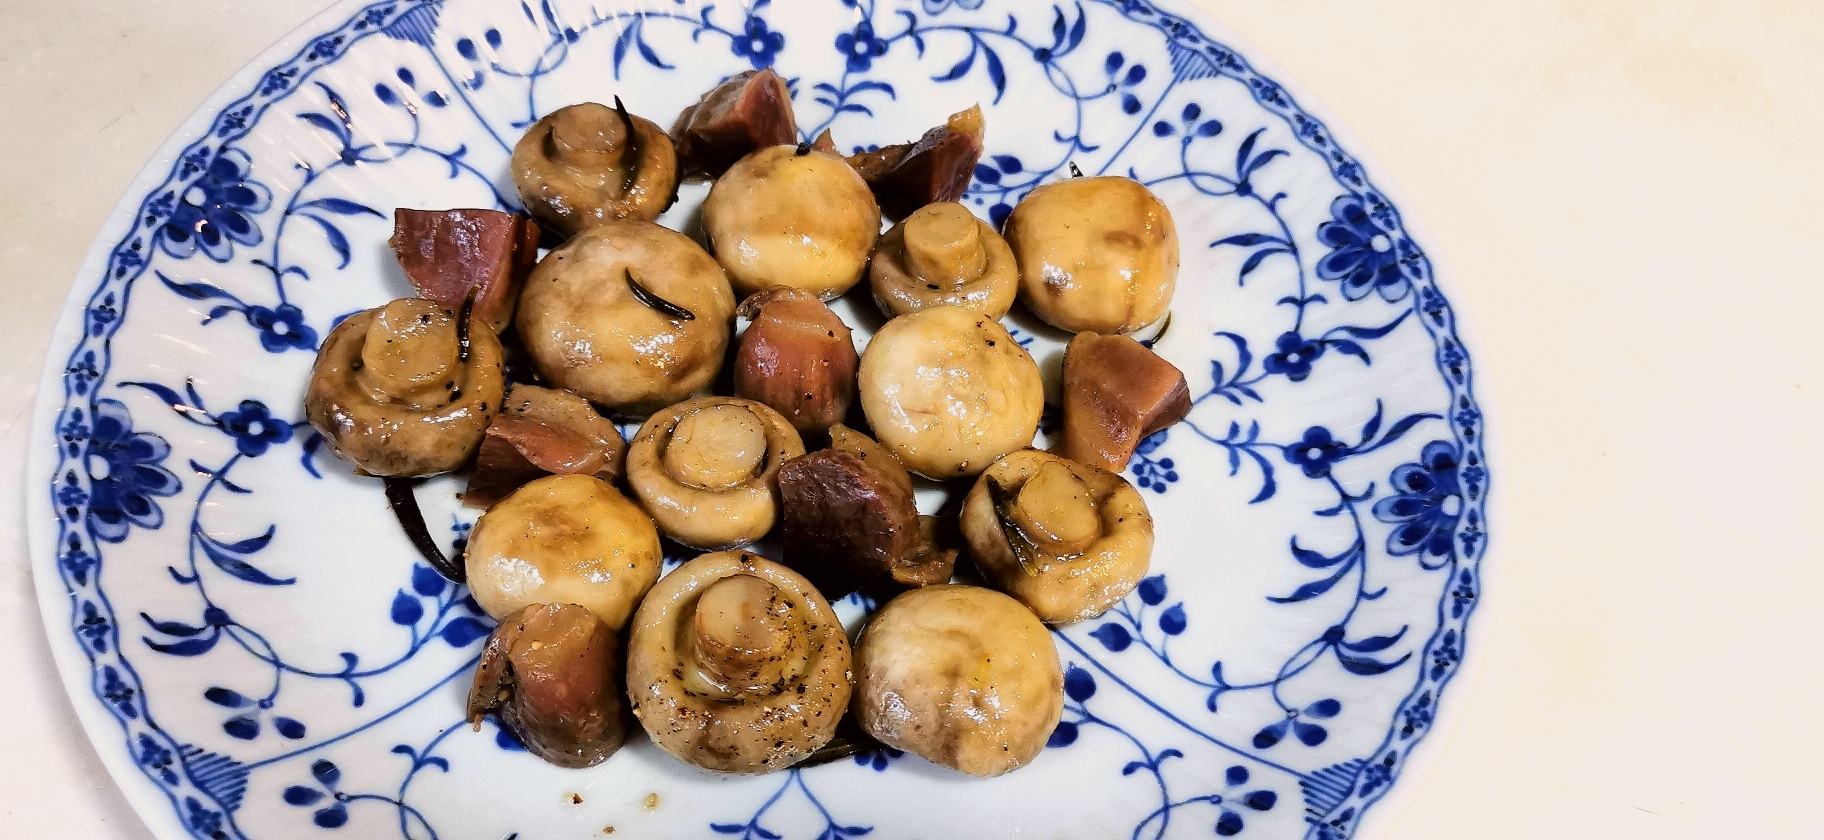 【居酒屋小菜】油封鸭胗蘑菇的做法